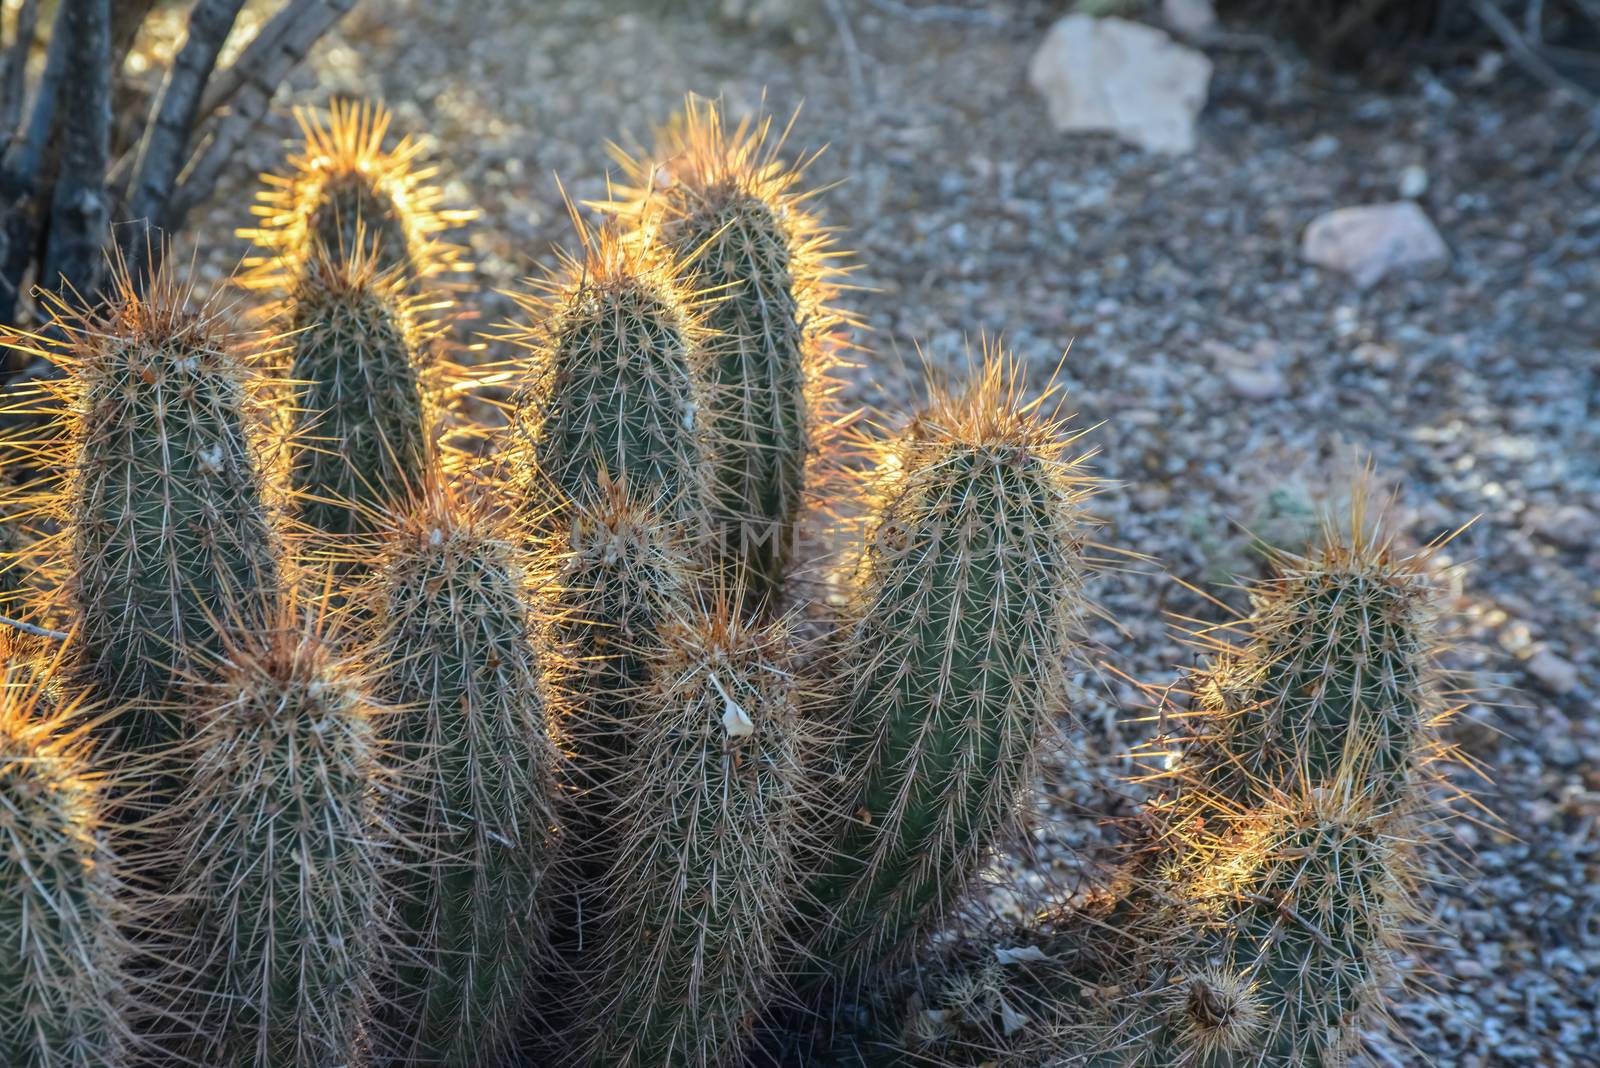 Large multi-stem cactus Echinocereus sp., Arizona, USA